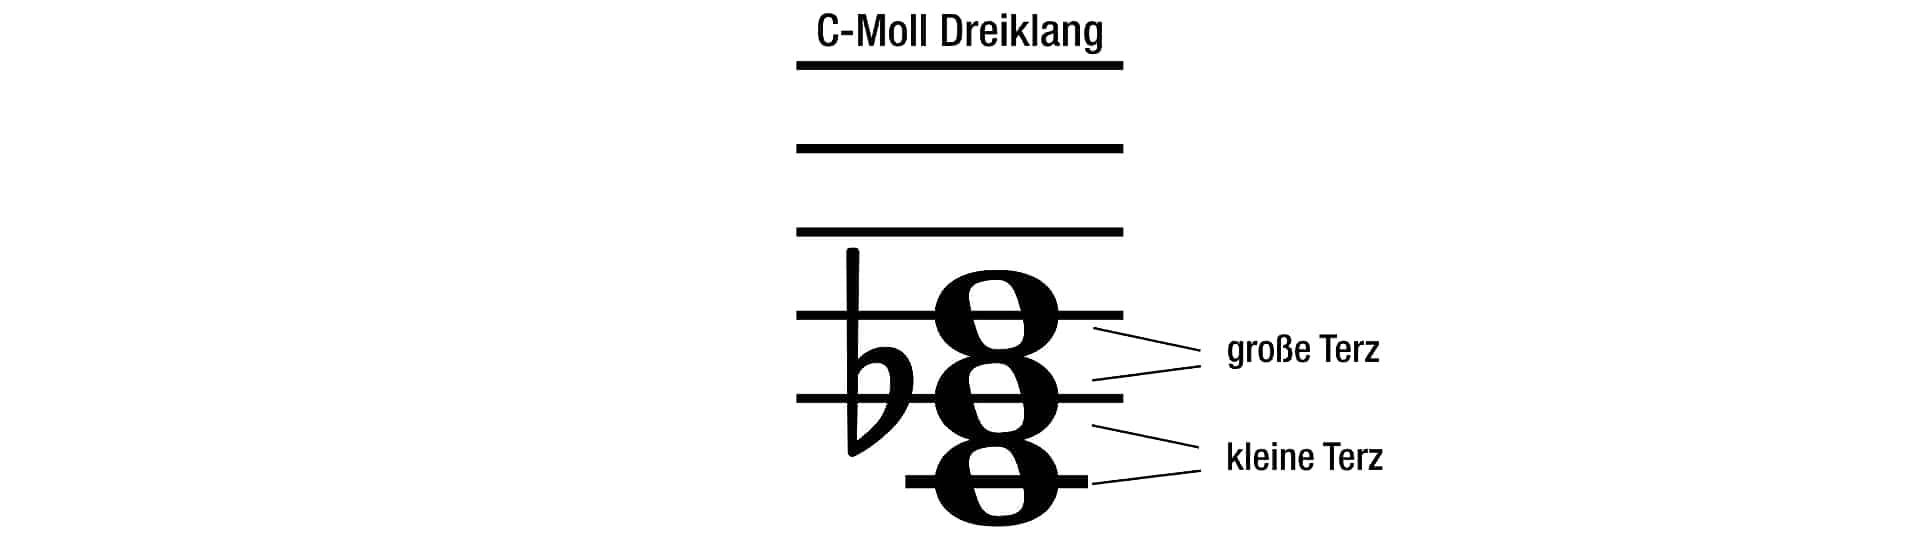 C-Moll-Dreiklang mit Beschriftung